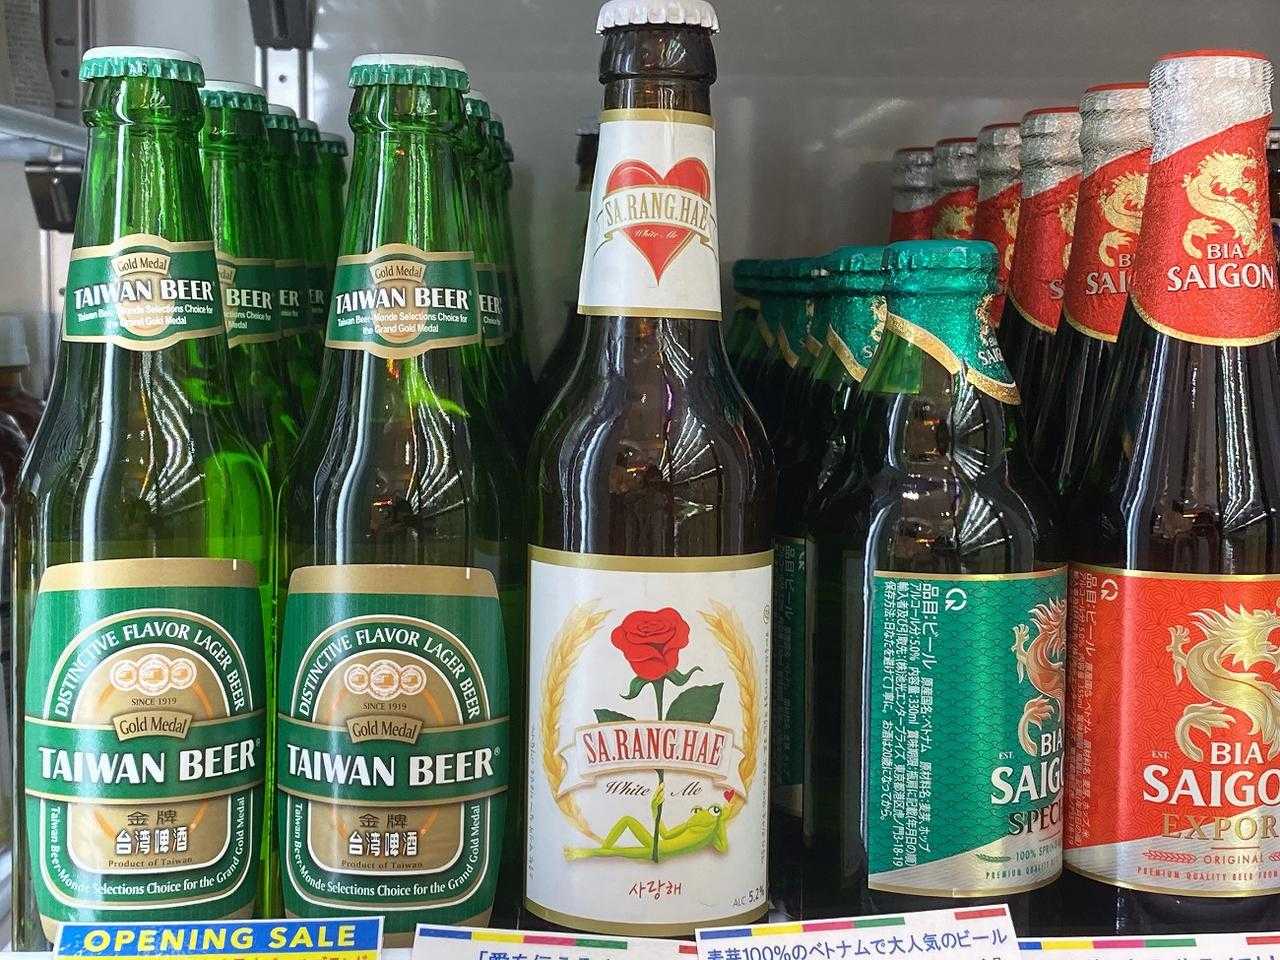 韓国ビール「サランヘ」